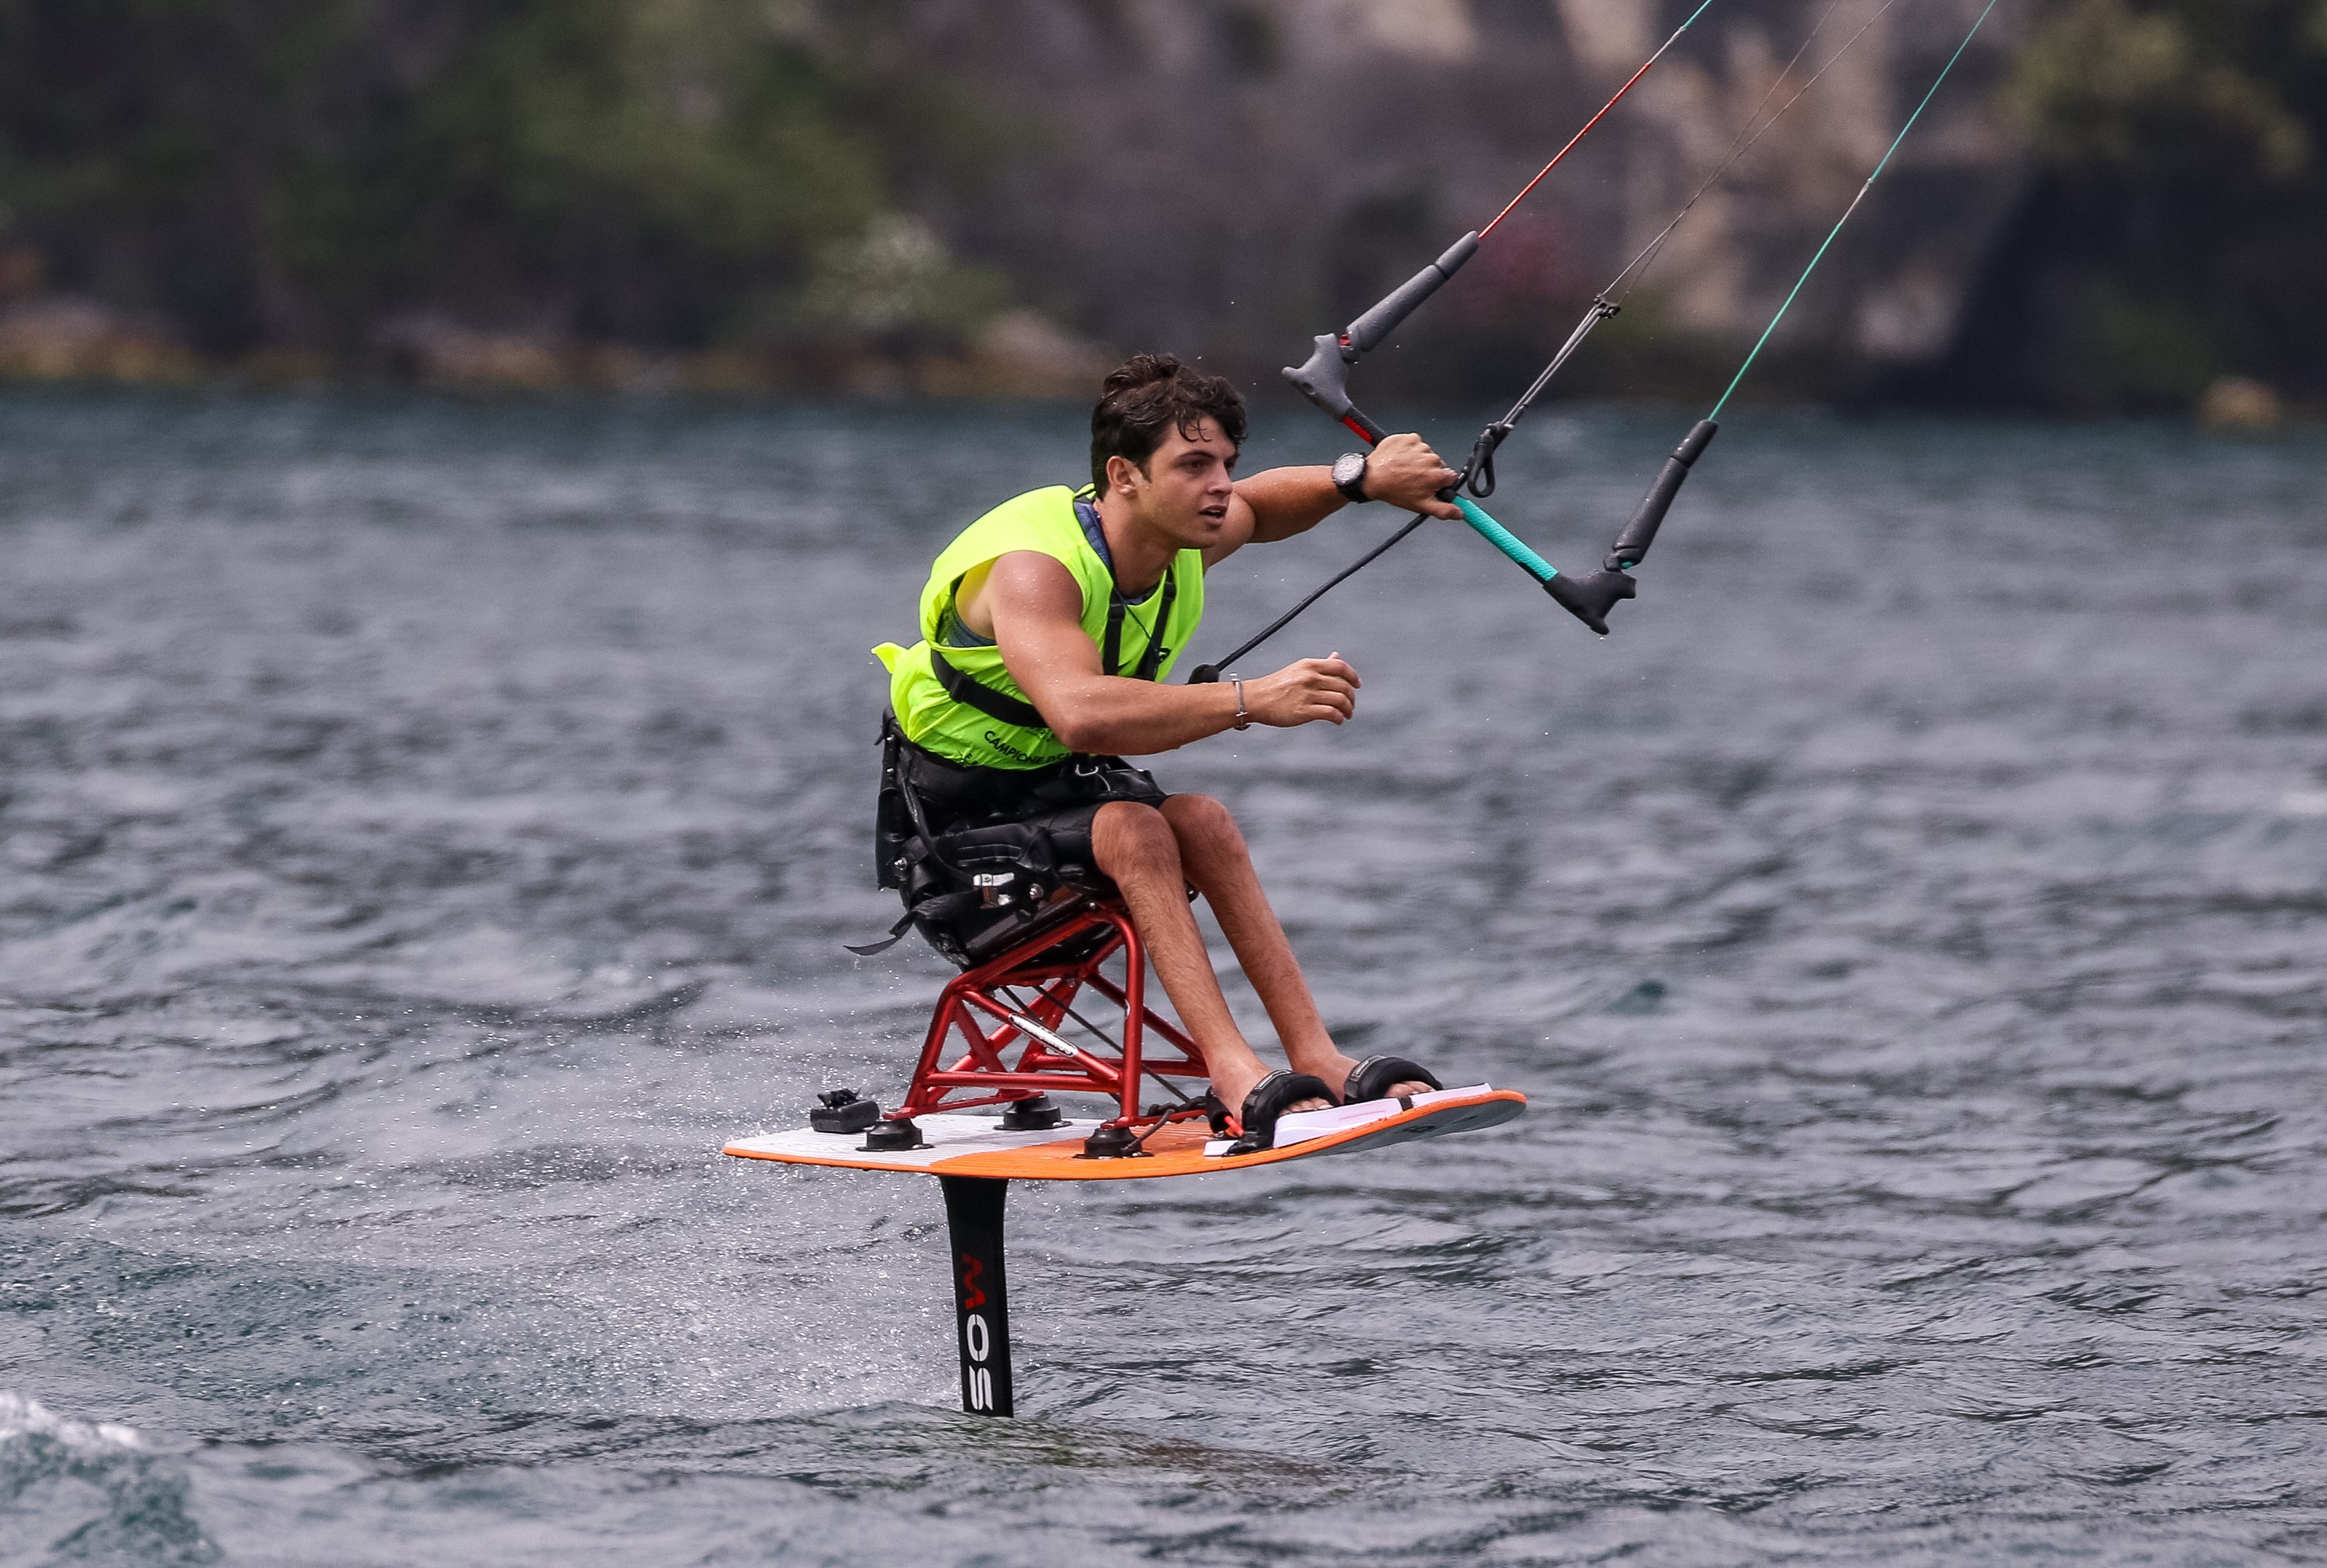 Un jeune homme paraplégique est en train de faire du kite surf. Il se tient sur sa planche en position assise grâce à un châssis vissé sur la planche.